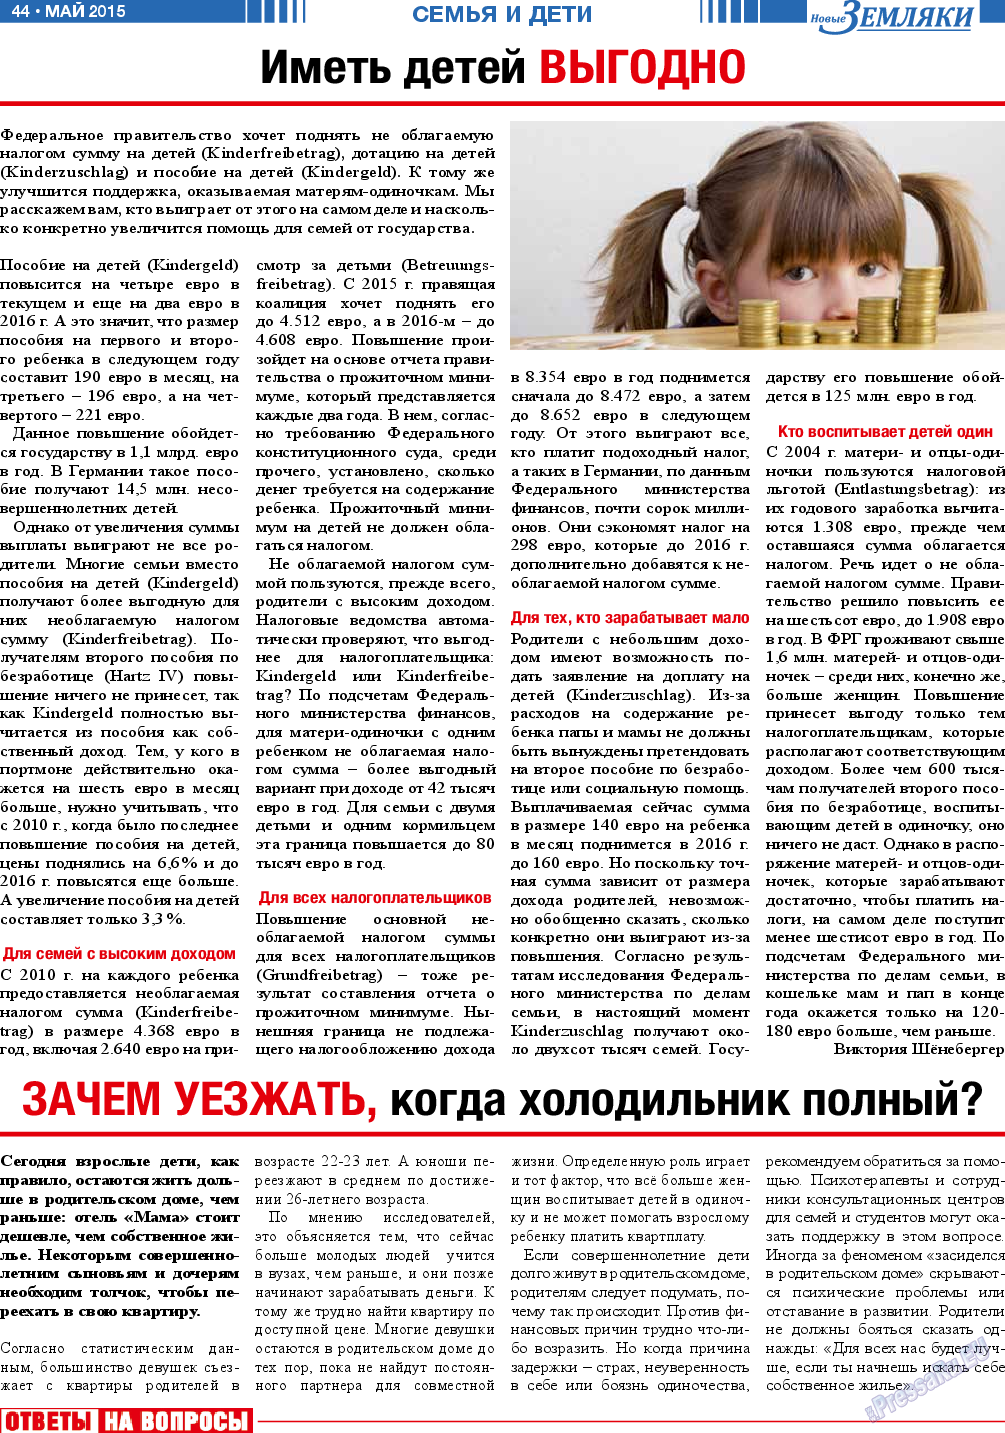 Новые Земляки, газета. 2015 №5 стр.44